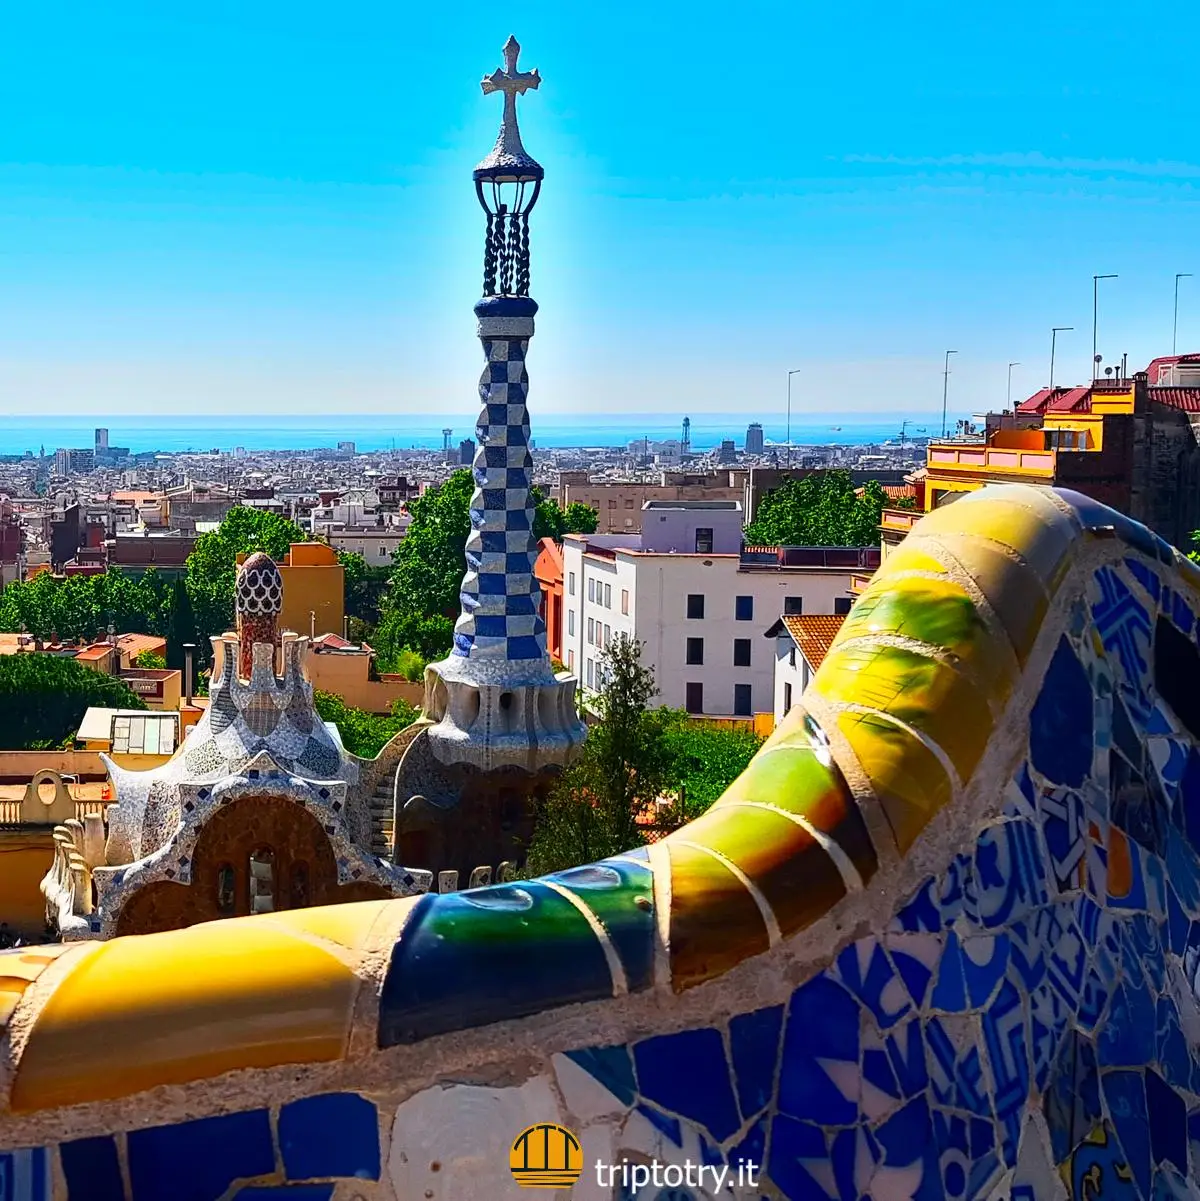 Cose da vedere a Barcellona - Opere di Gaudi a Parc Guell a Barcellona